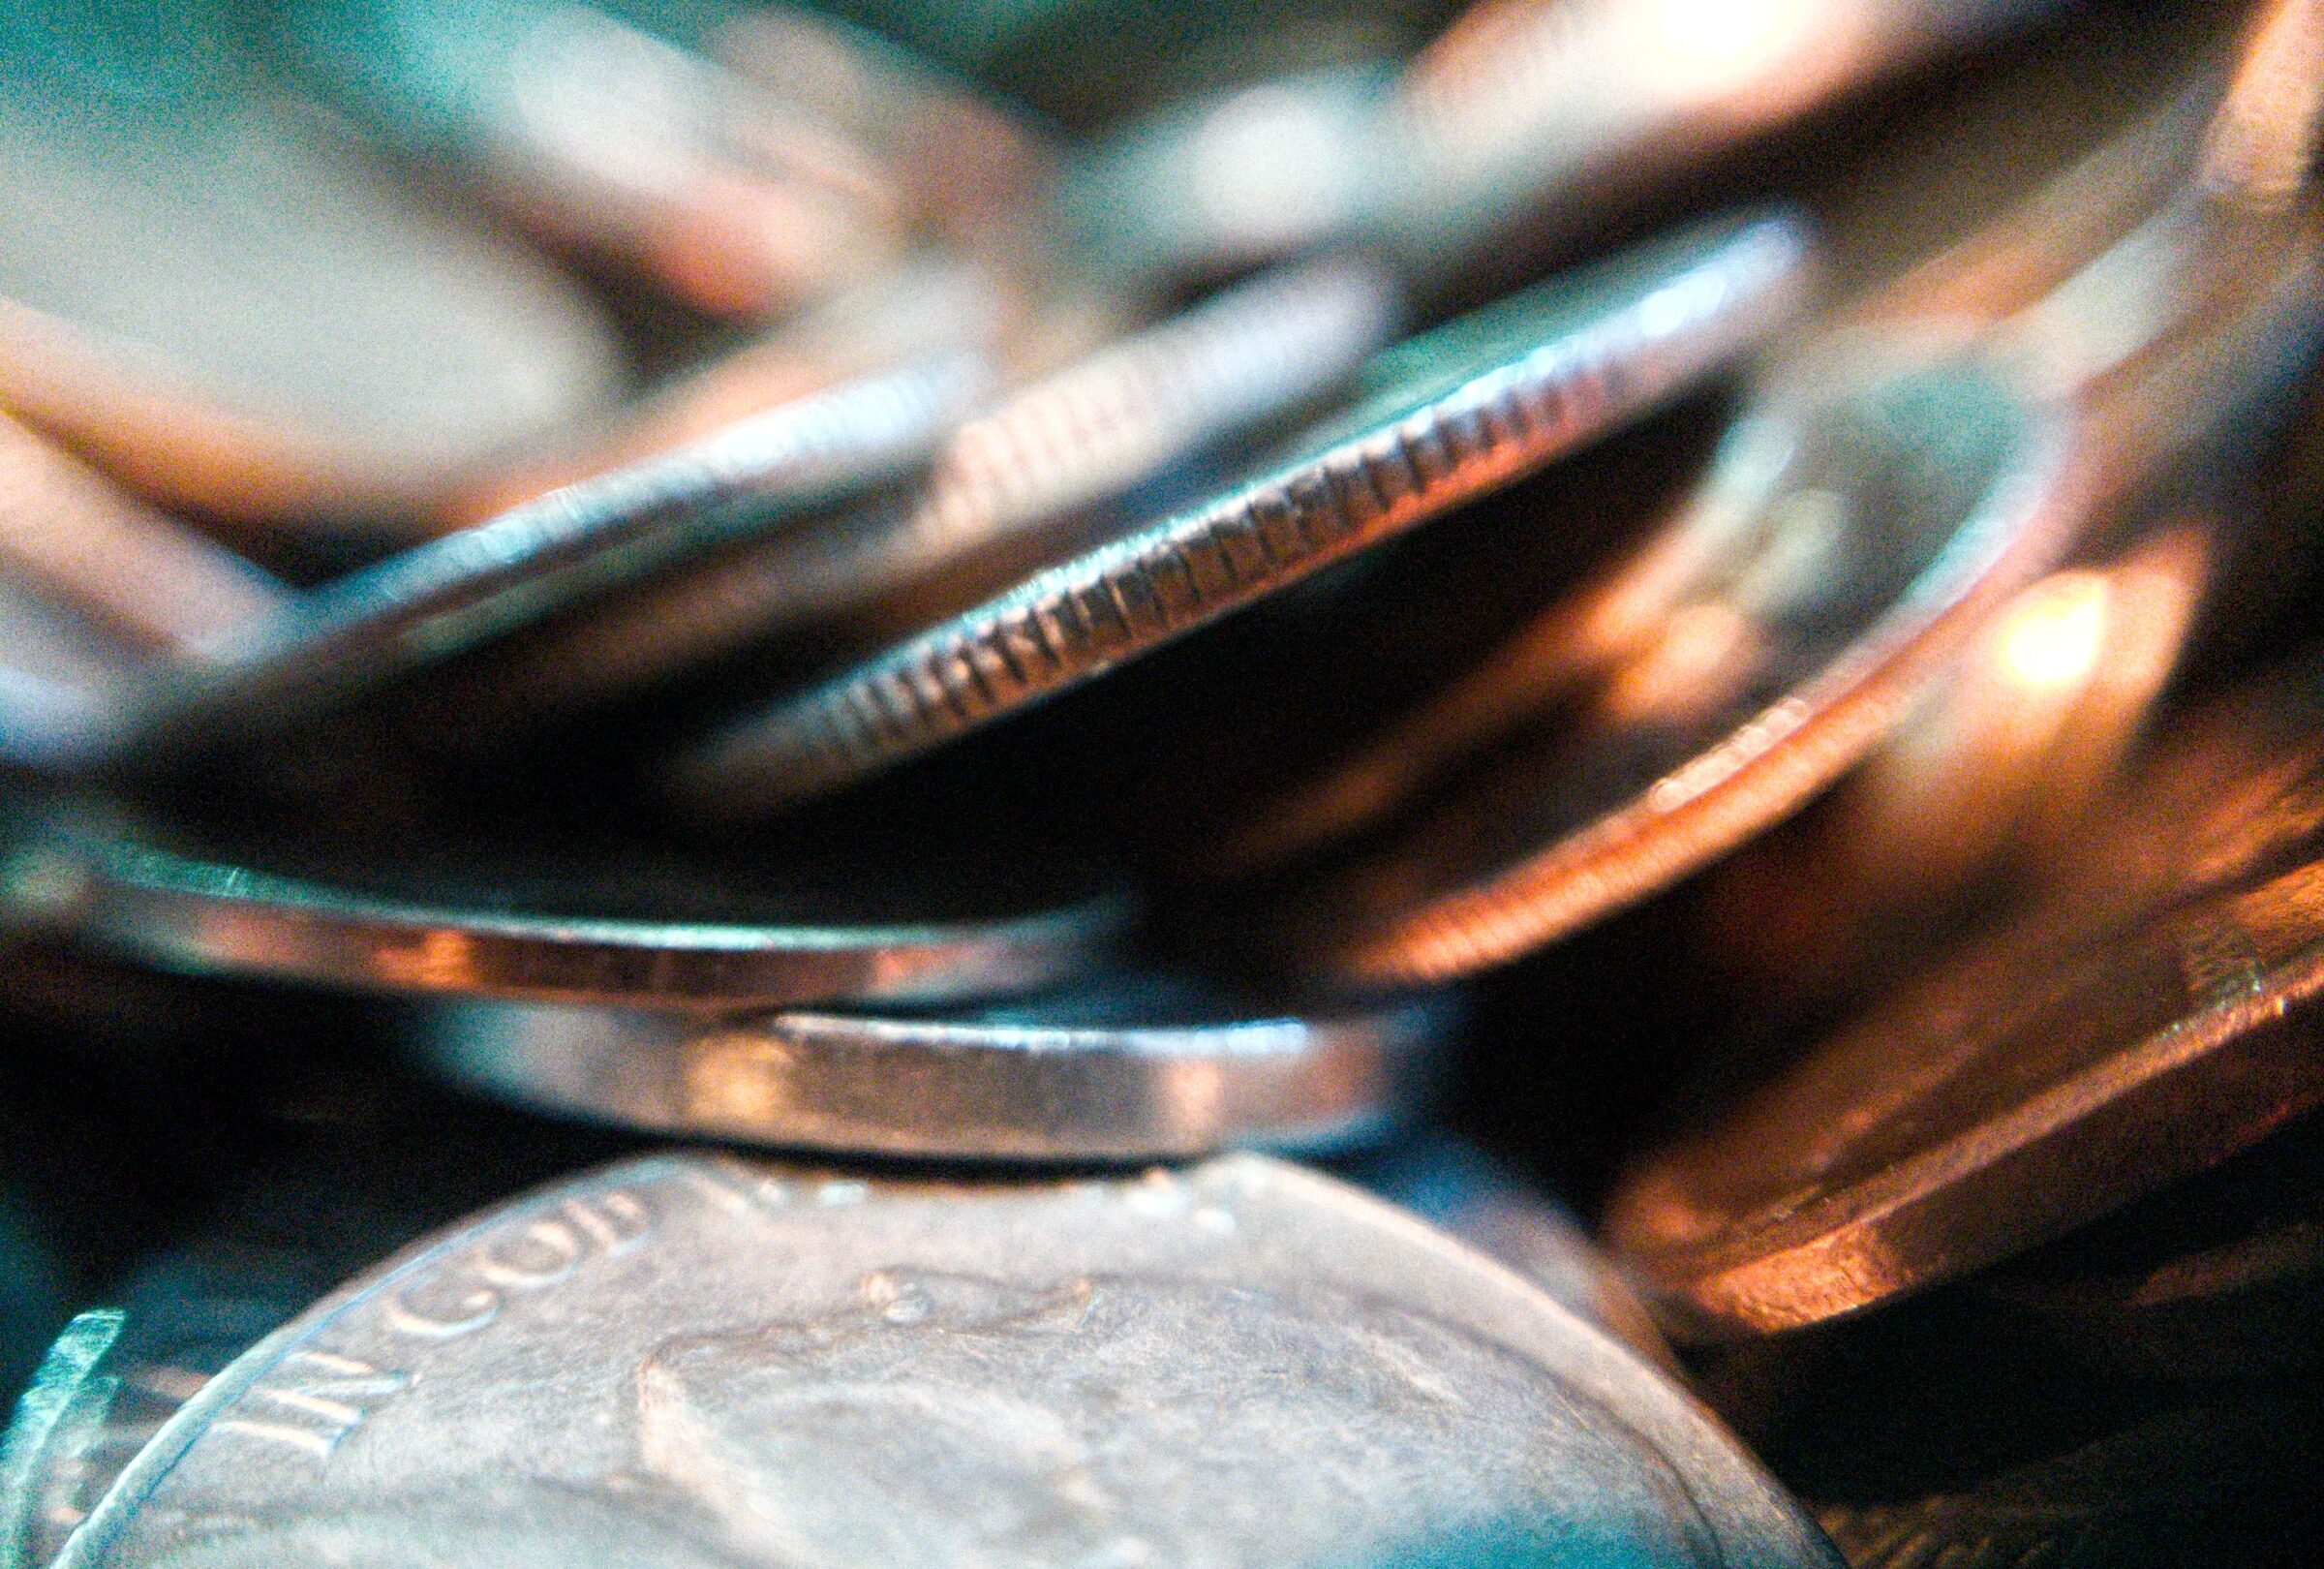 Et nærbillede af en bunke mønter, der viser betalingsmodellen.